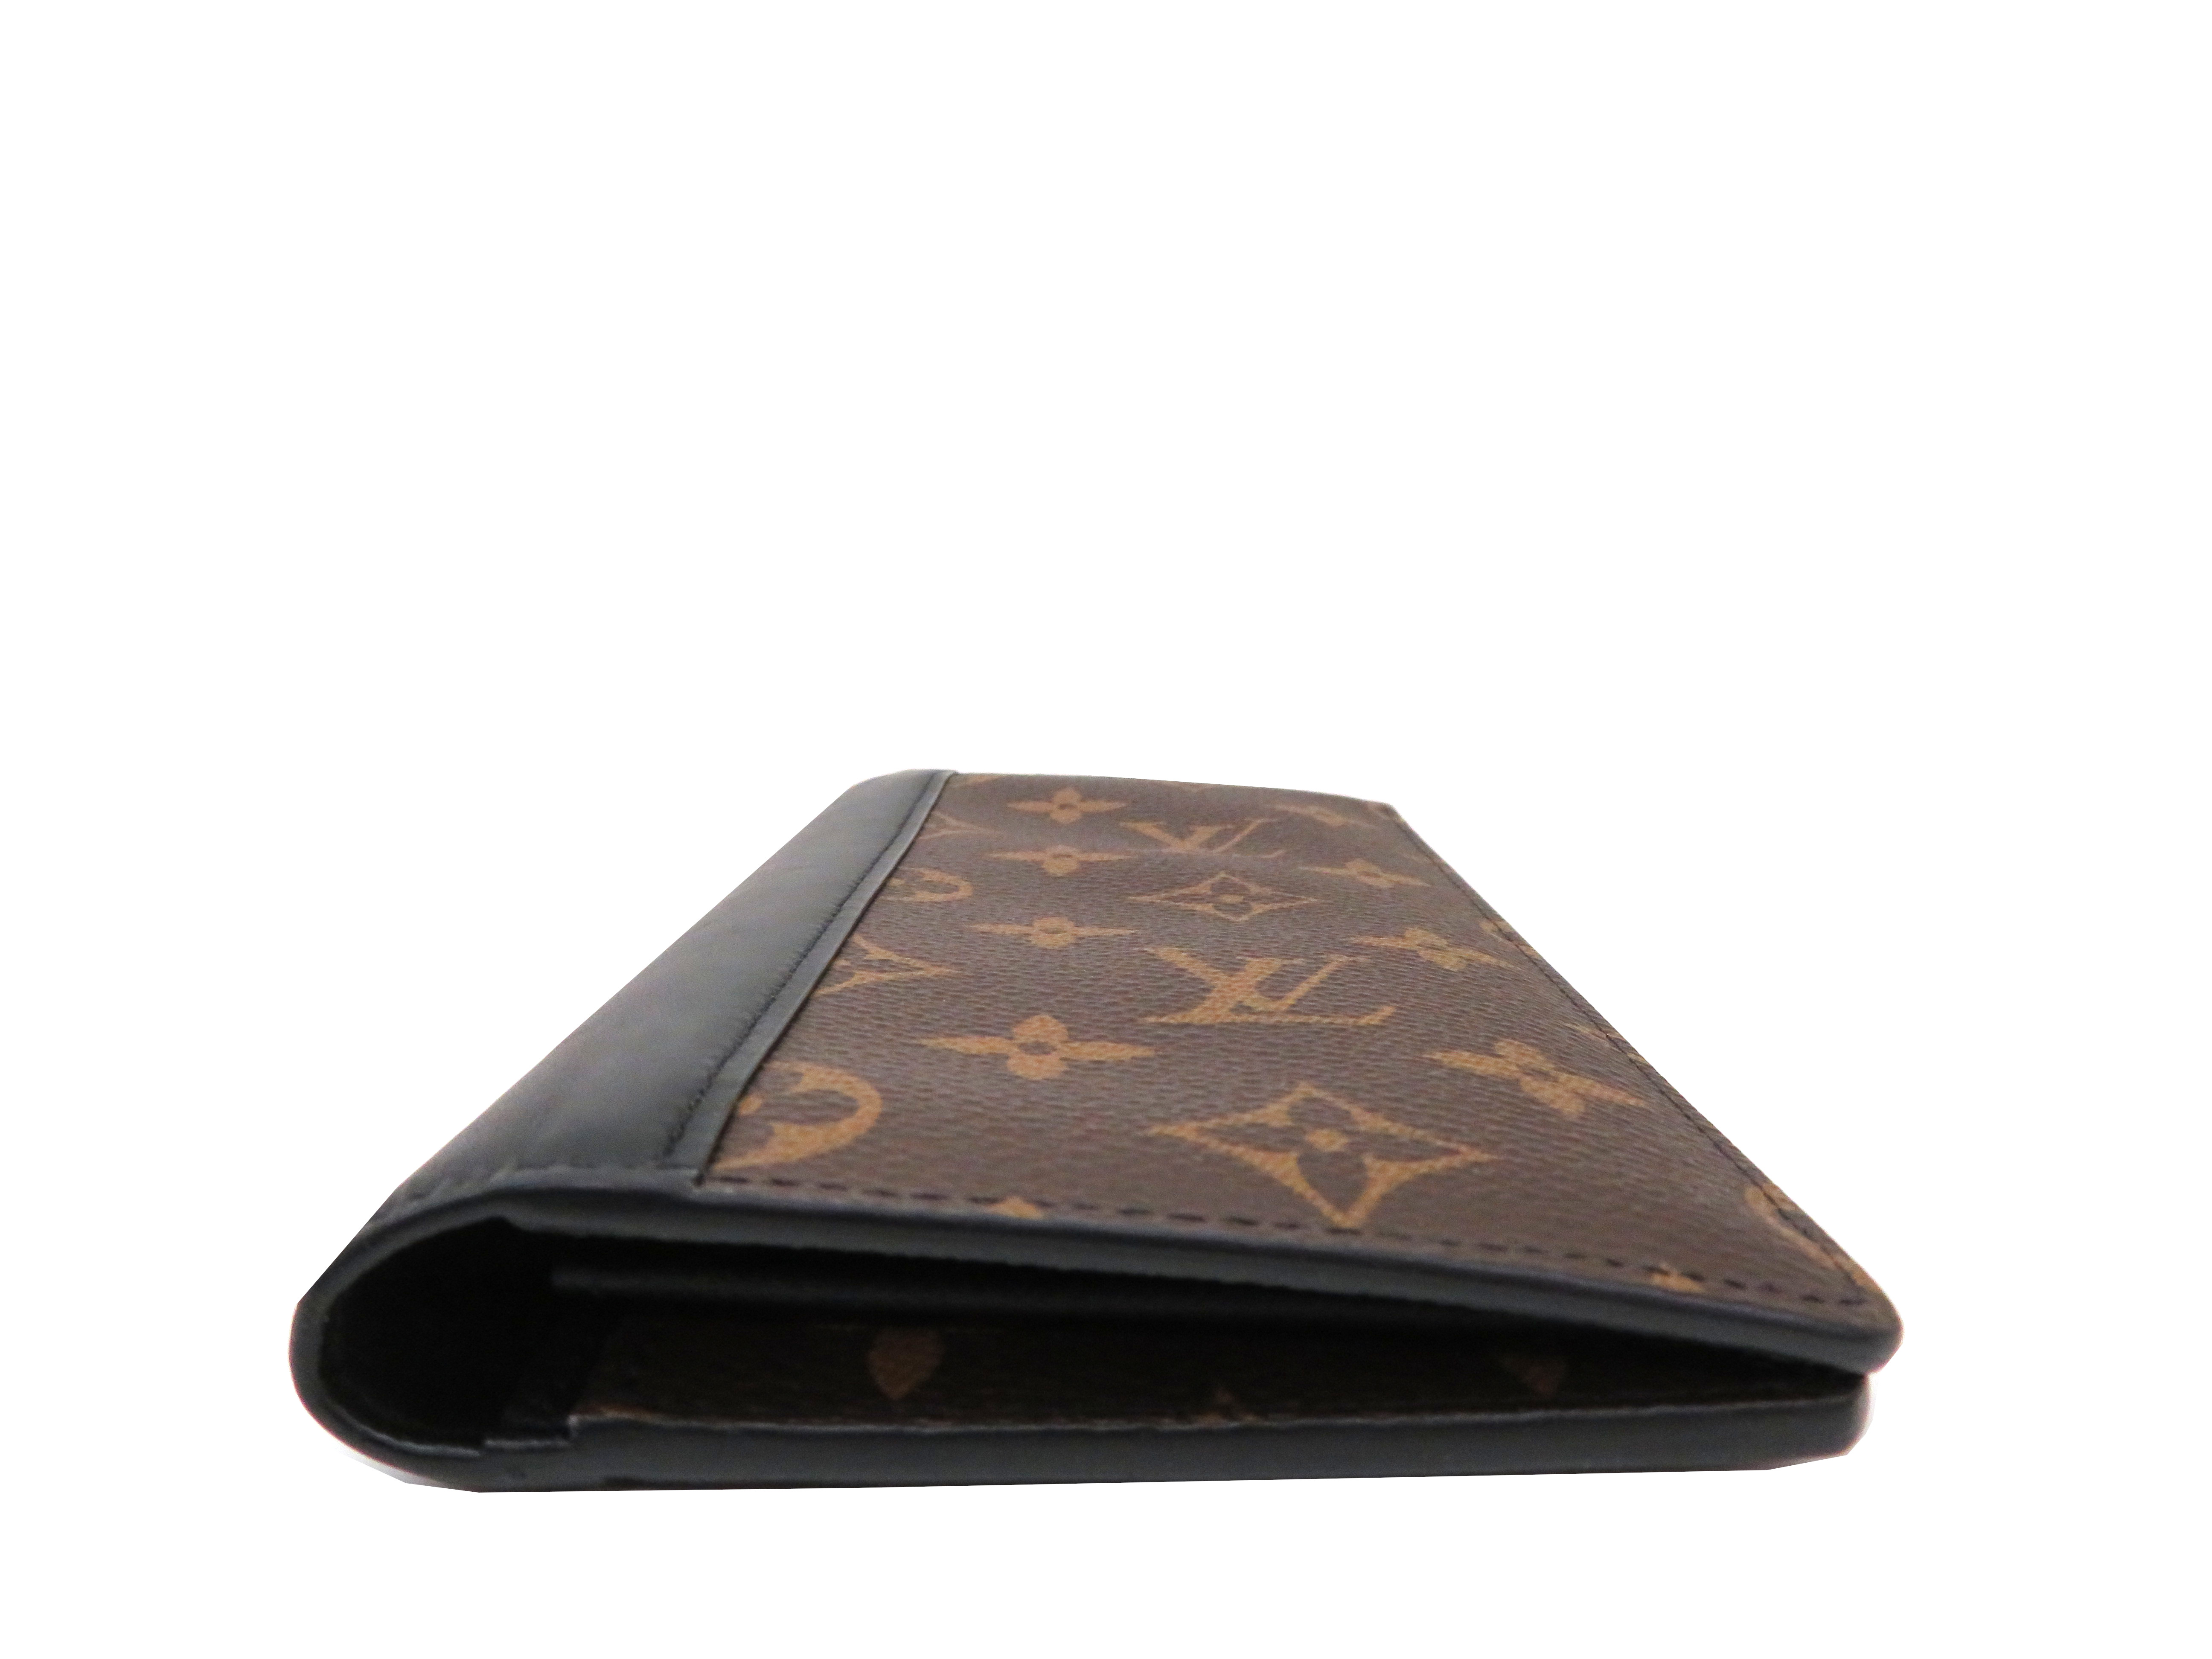 Louis Vuitton MONOGRAM MACASSAR Brazza wallet (M69410, M69410)